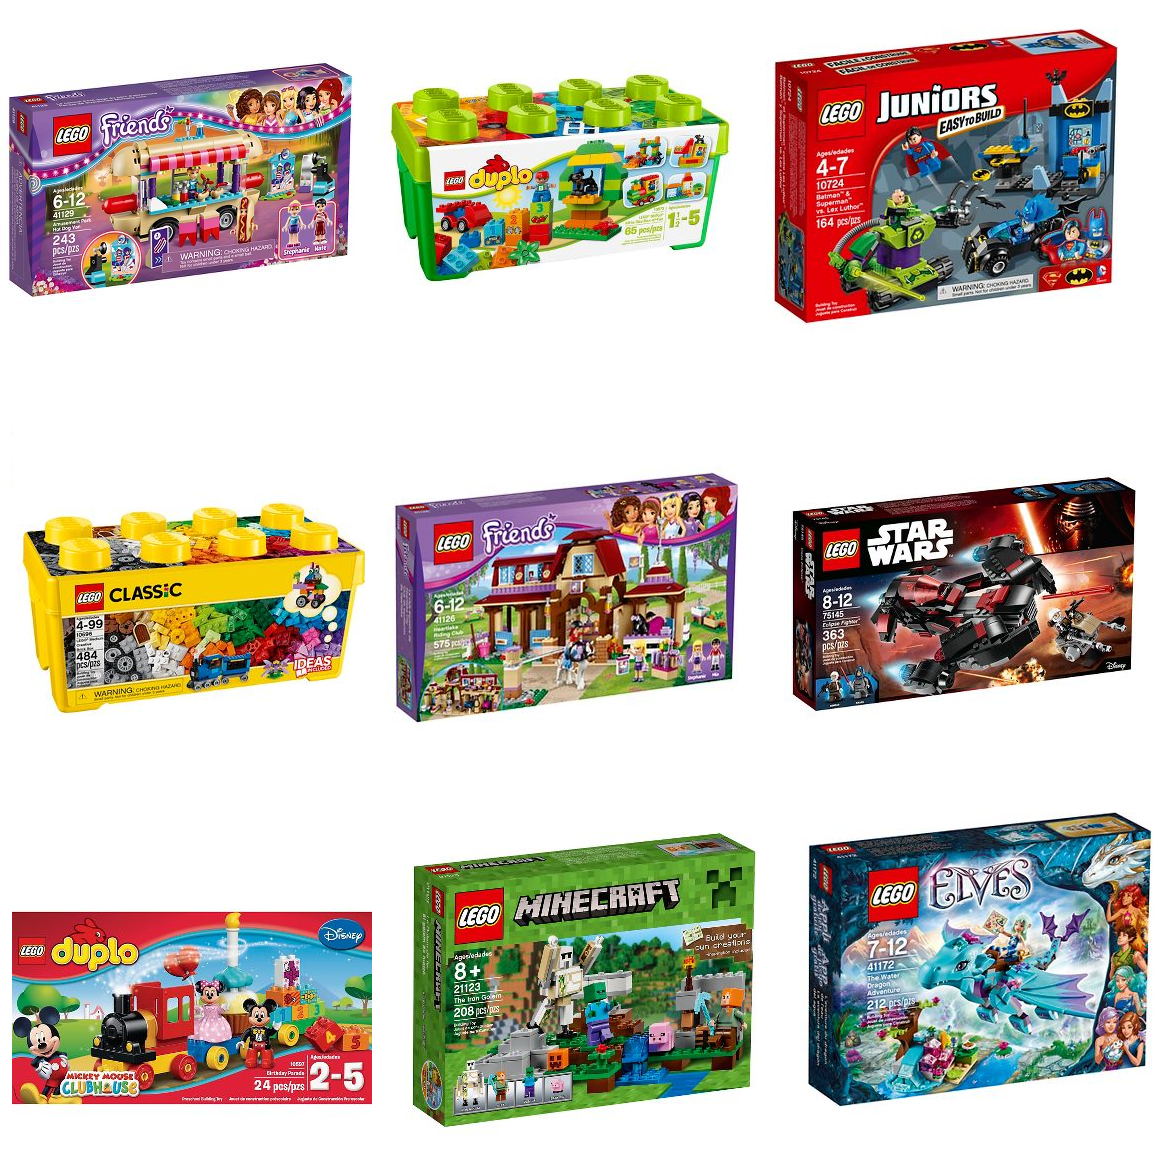 Target’s Huge LEGO Sale Happening NOW! Up To 20% Off Hundreds of Sets!